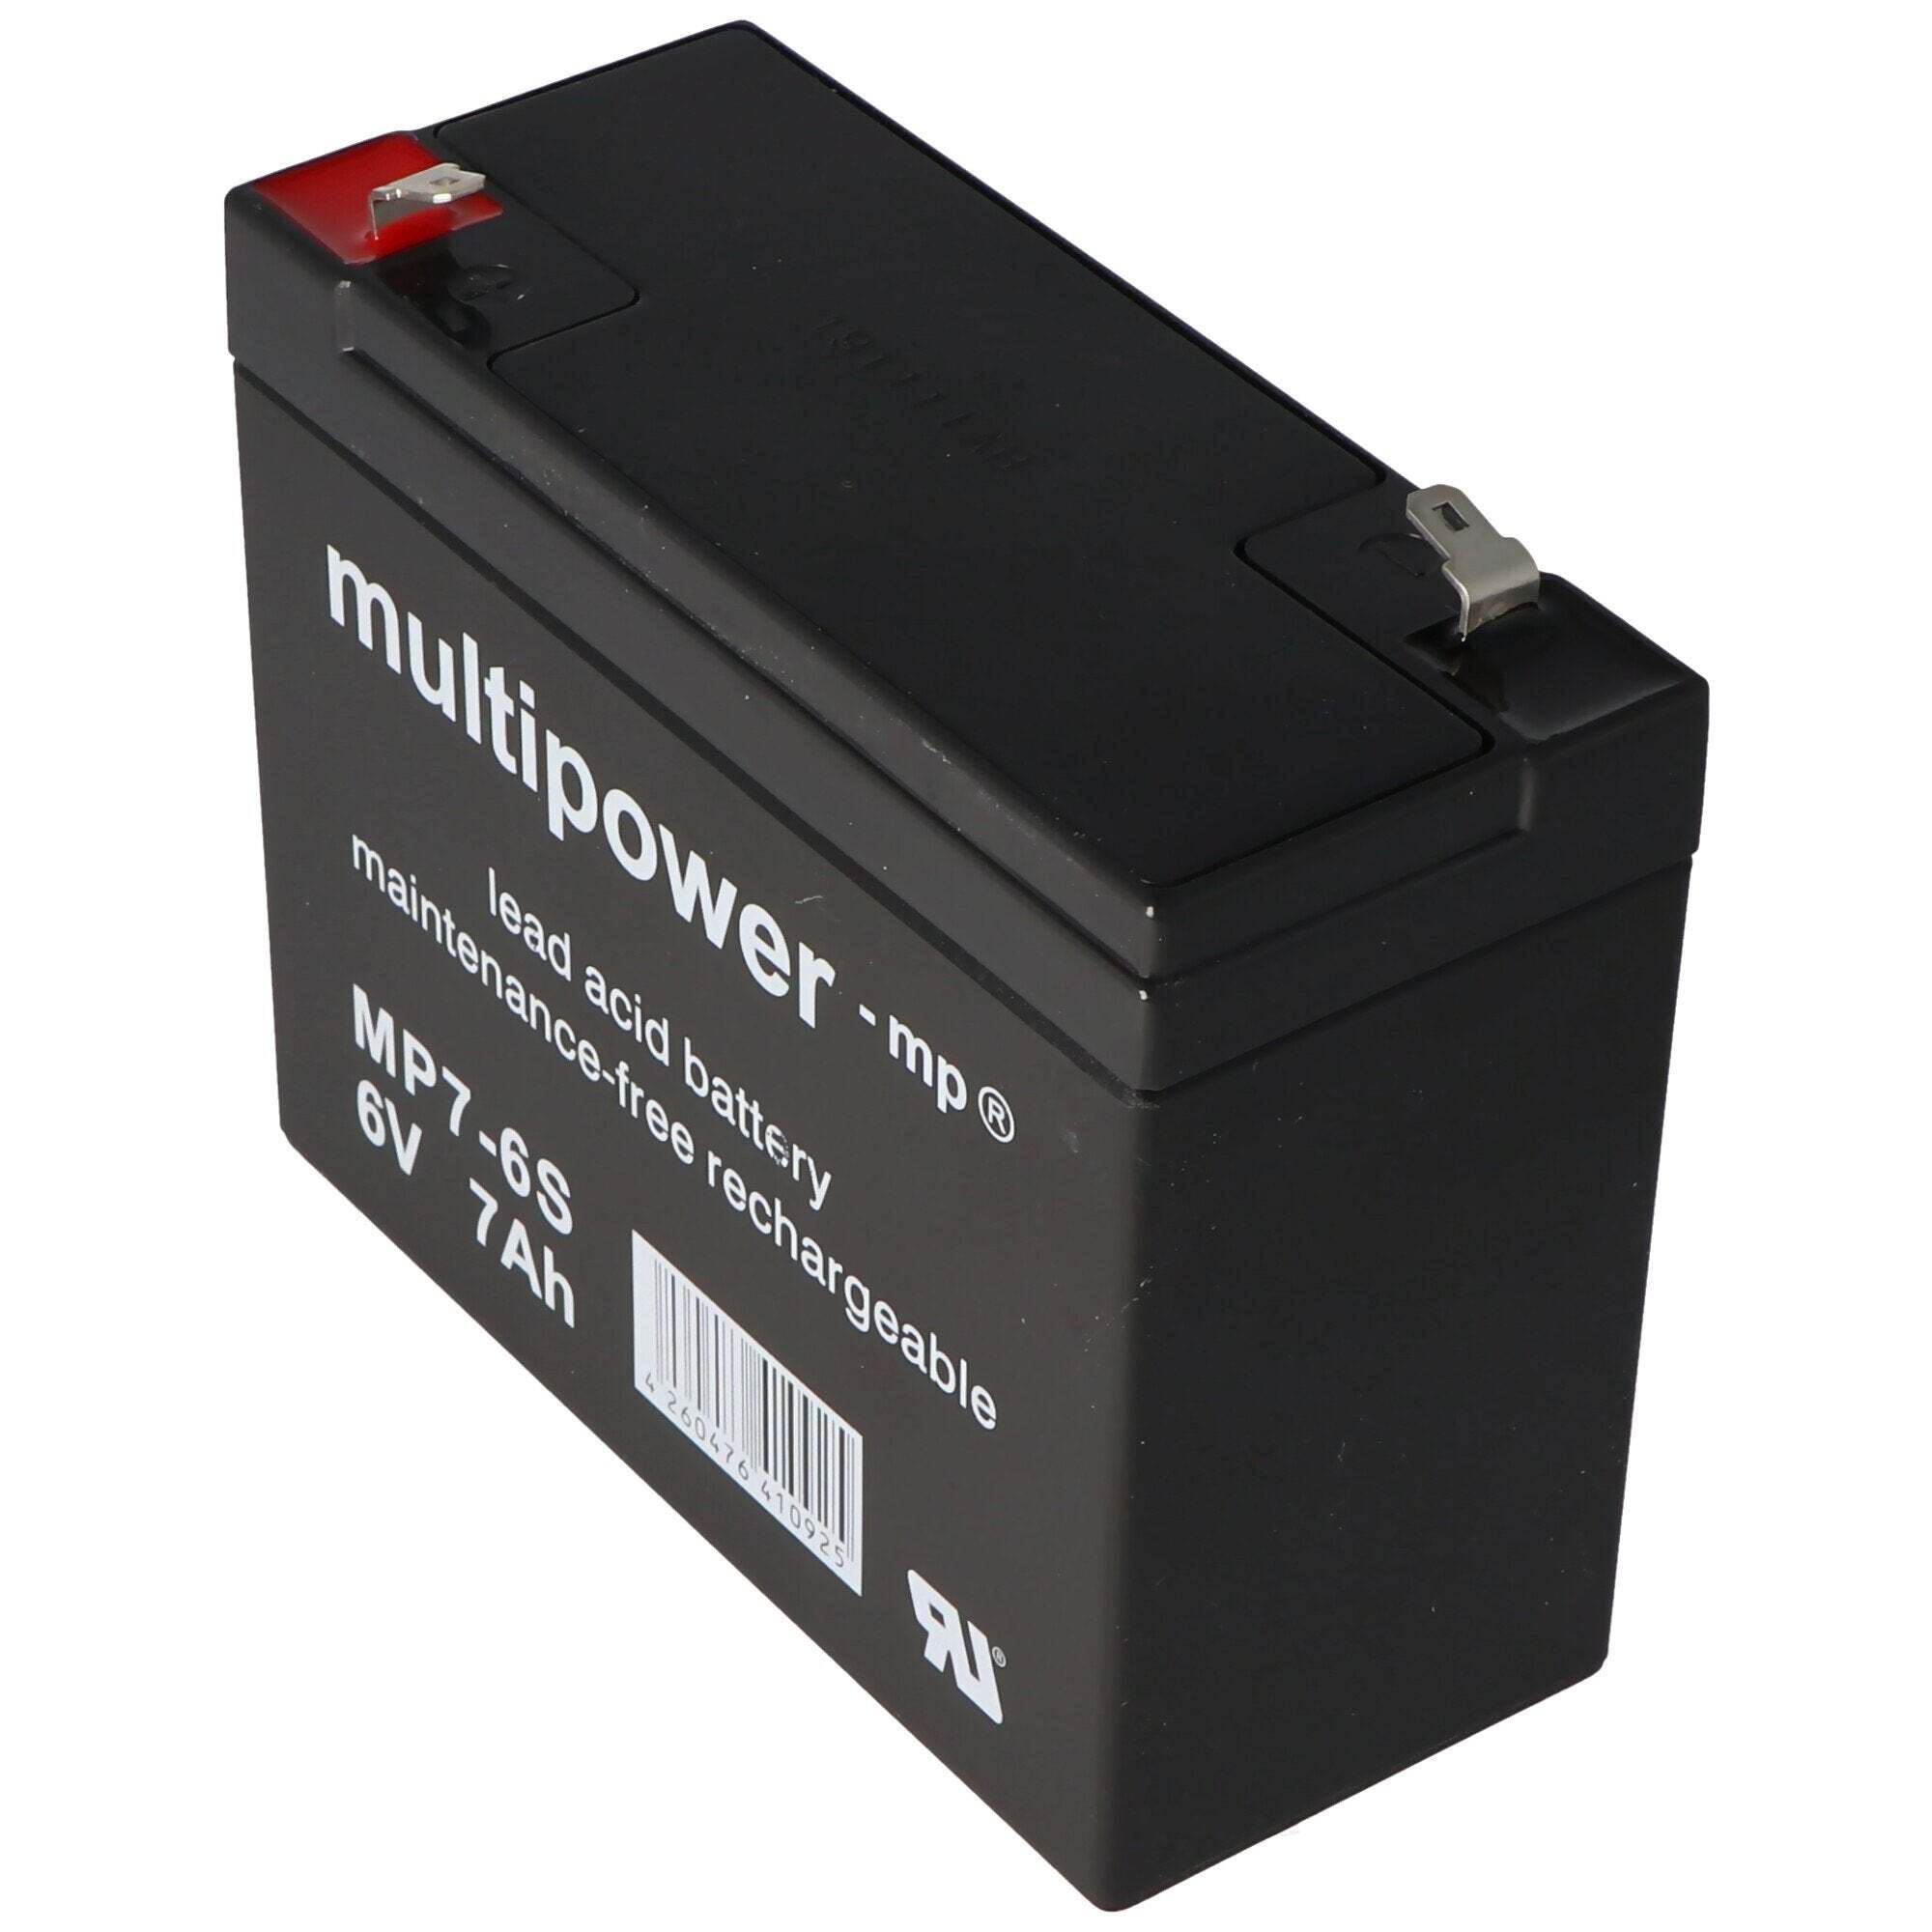 MULTIPOWER Multipower MP7-6S geschikt voor de Sonnenschein A206 / 6.5S batterij, maar met iets andere contacten